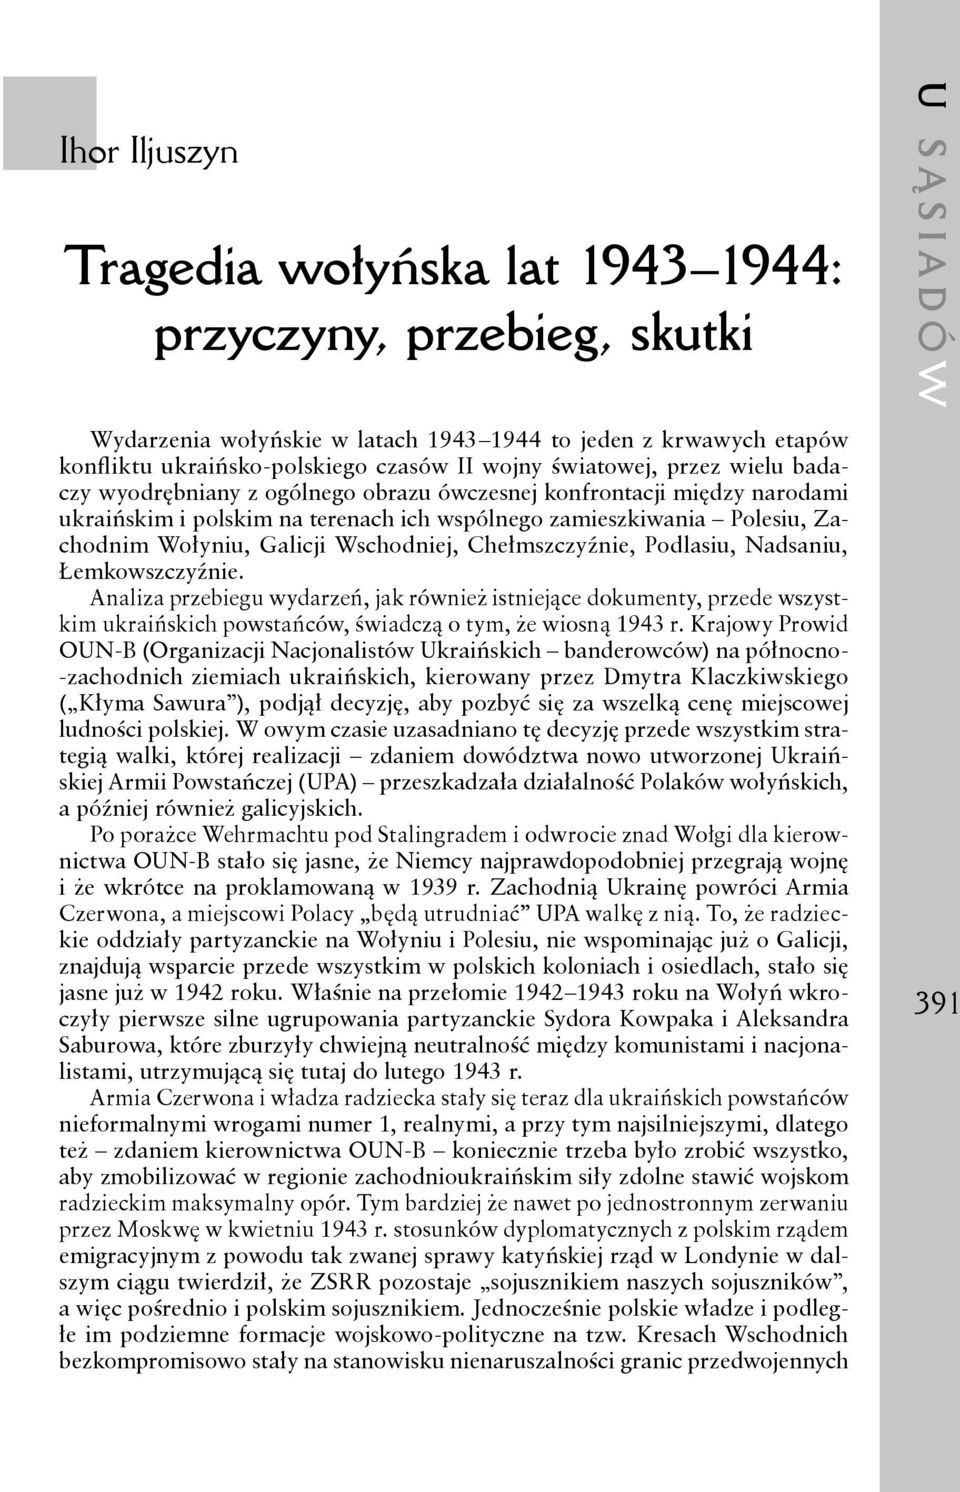 Chełmszczyźnie, Podlasiu, Nadsaniu, Łemkowszczyźnie. Analiza przebiegu wydarzeń, jak również istniejące dokumenty, przede wszystkim ukraińskich powstańców, świadczą o tym, że wiosną 1943 r.